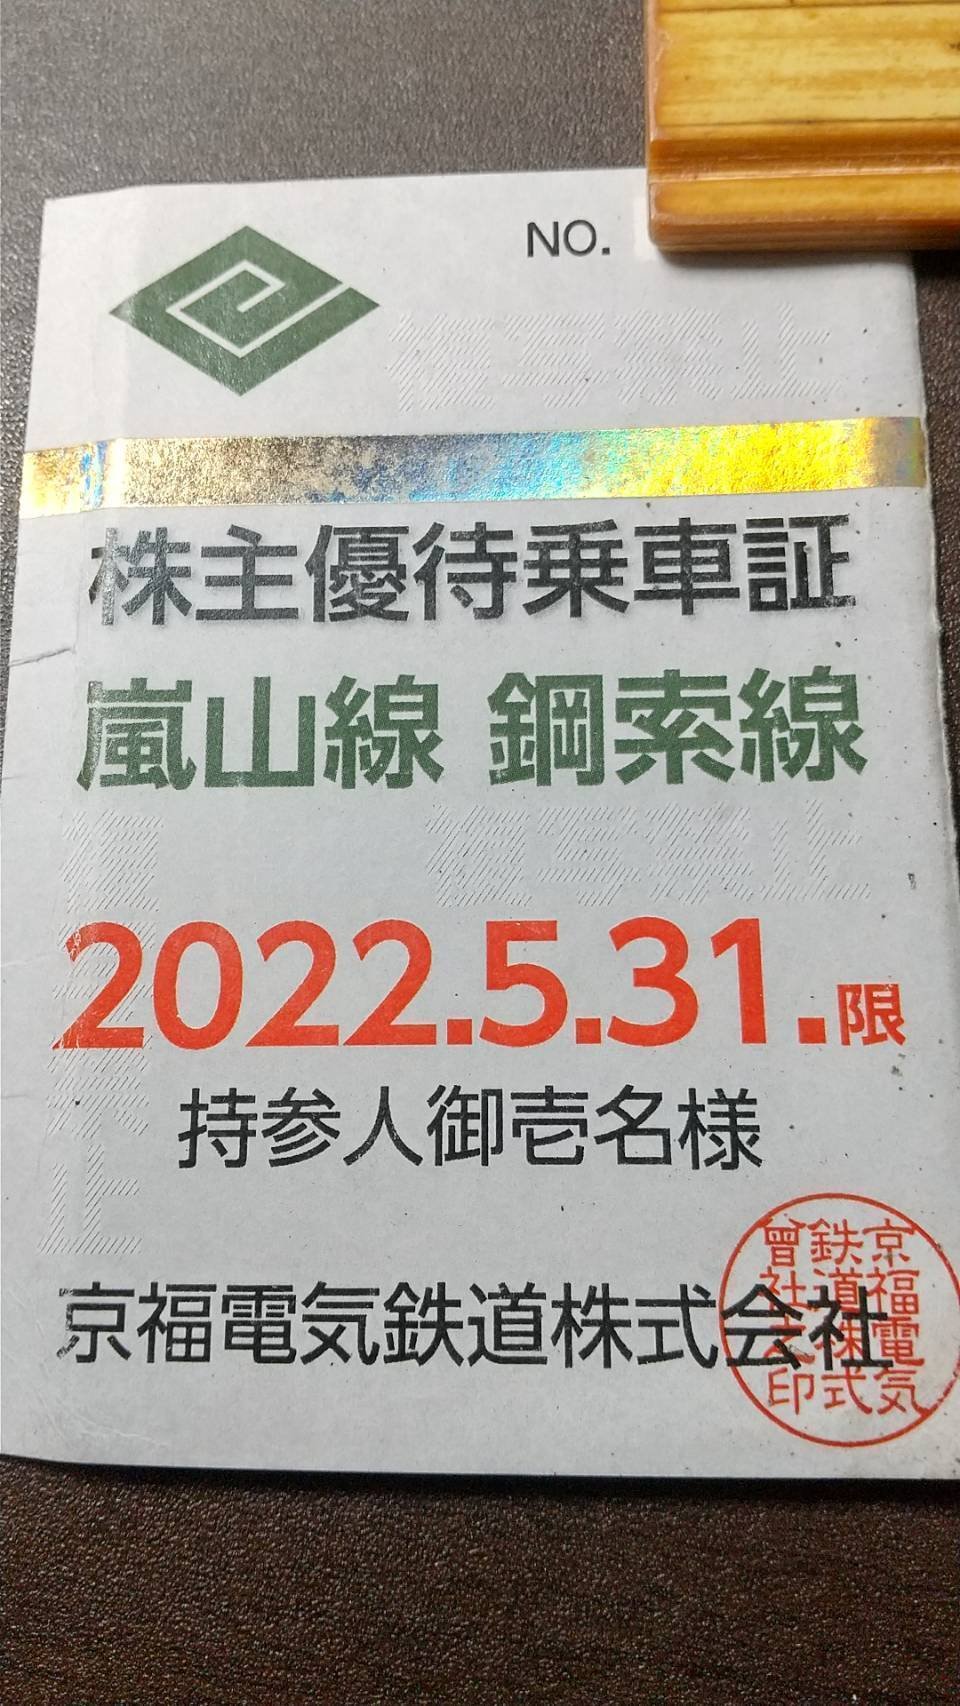 【在庫あ新作】京福電鉄 株主優待乗車証 1年間有効です。嵐電 乗車券